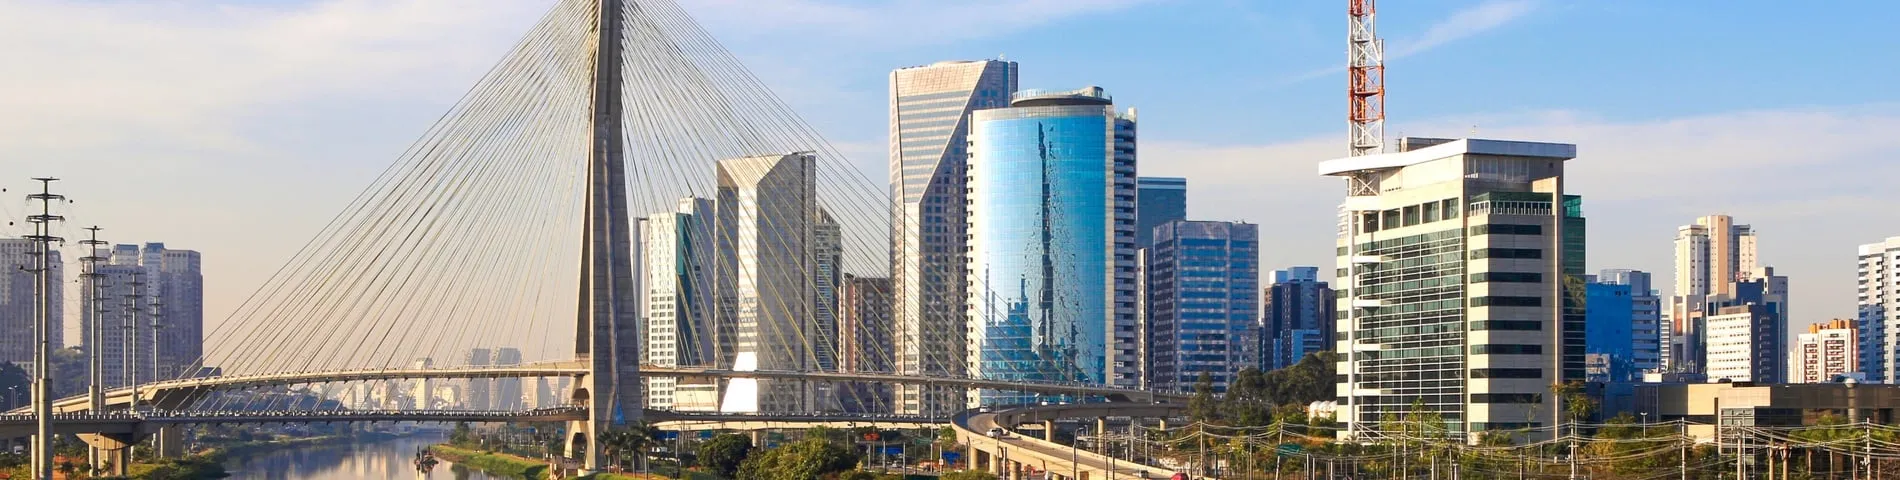 Сан-Паулу - 